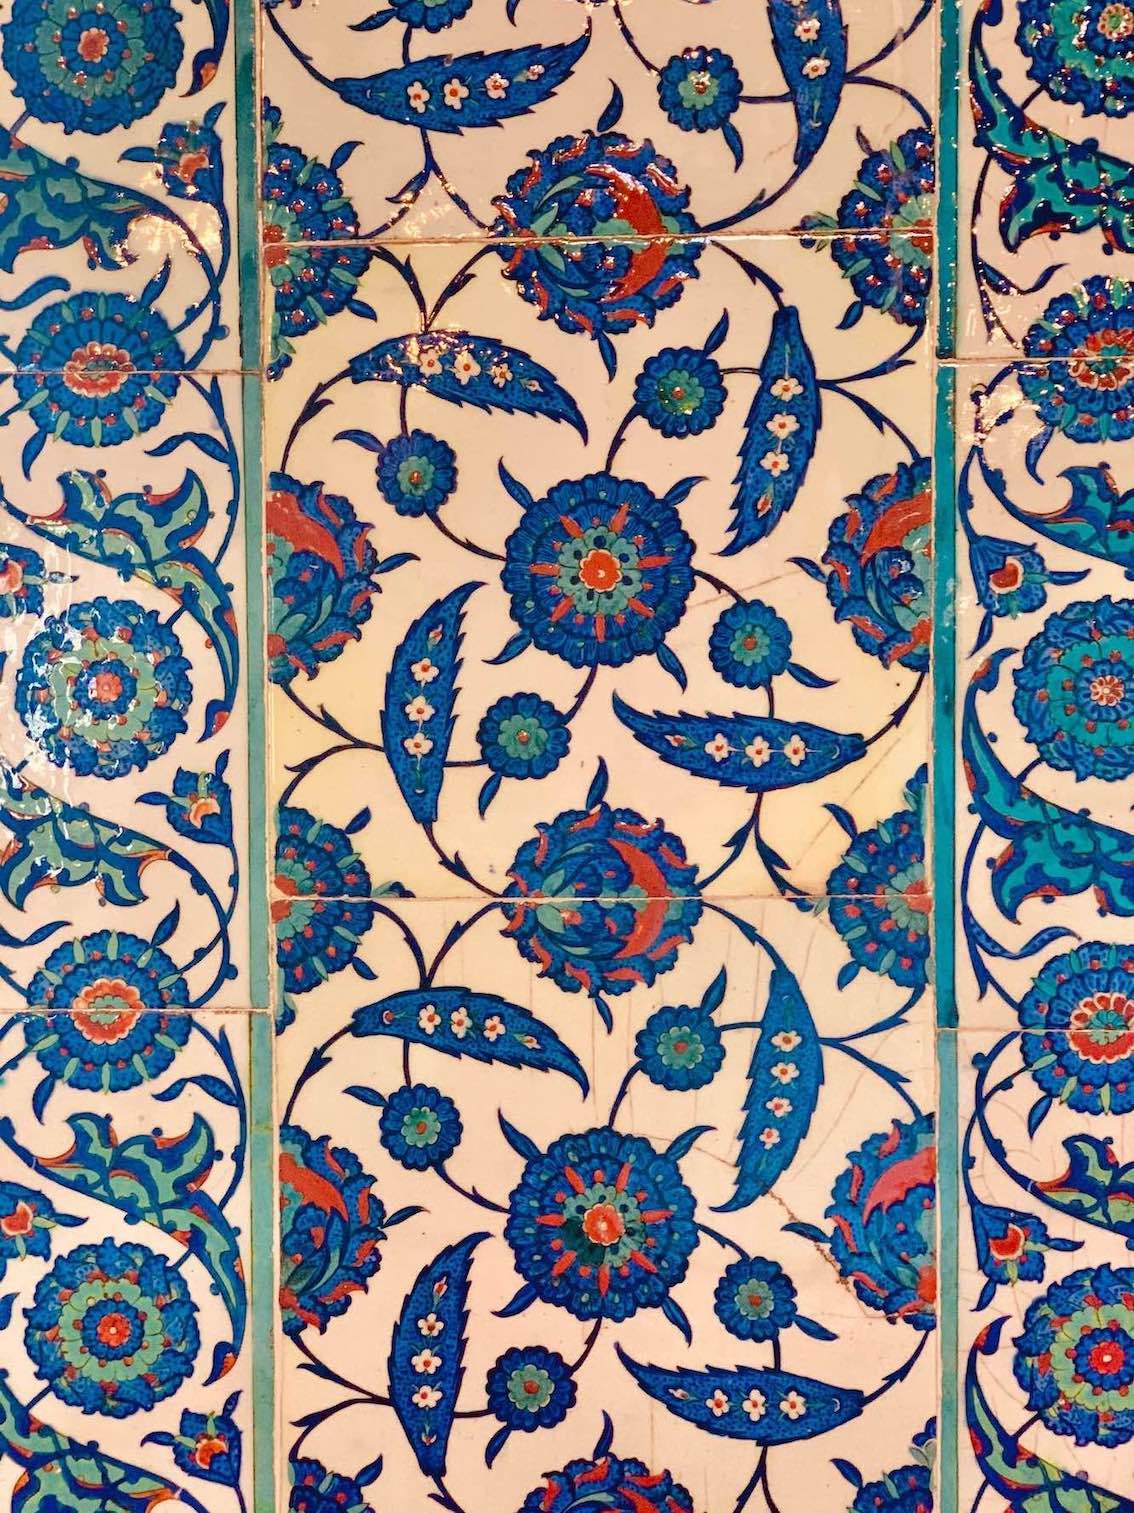 Iznik tiles Tomb of Suleiman the Magnificent